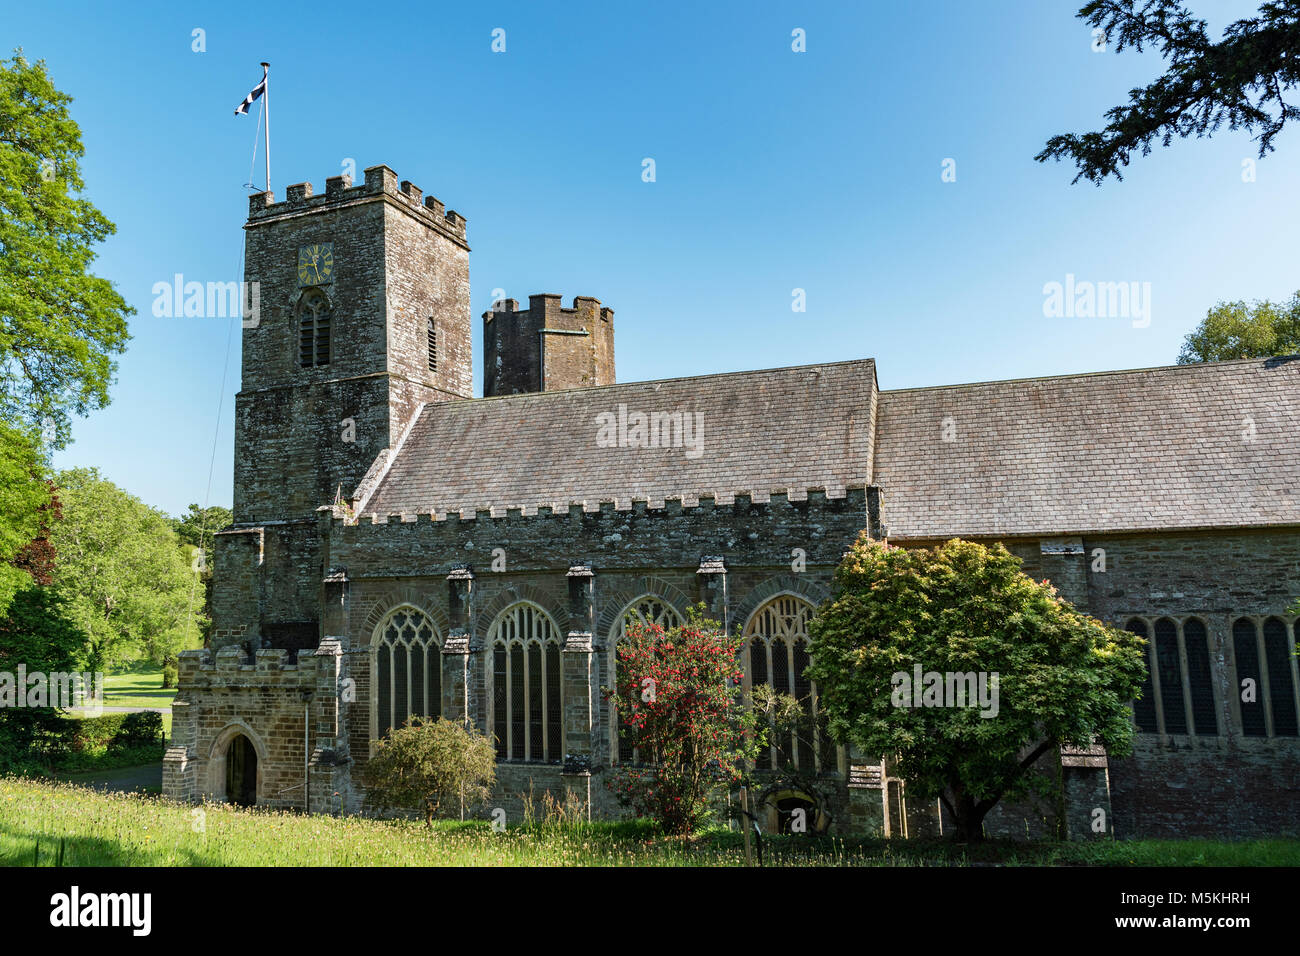 Prieuré st.allemands une grande église normande dans le village de st.allemands, sud-est de Cornwall, Angleterre, Grande-Bretagne, Royaume-Uni. Banque D'Images